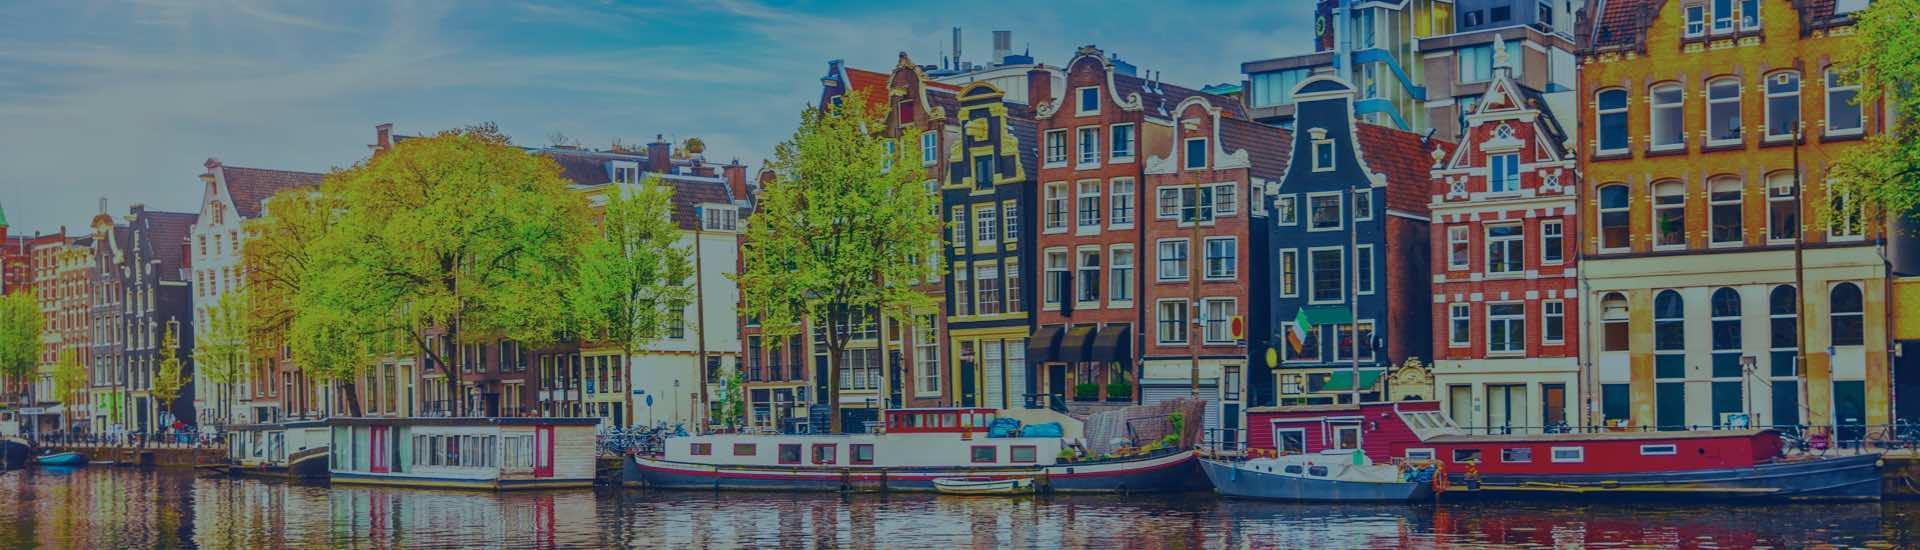 ابحث عن أفضل الفنادق في امستردام